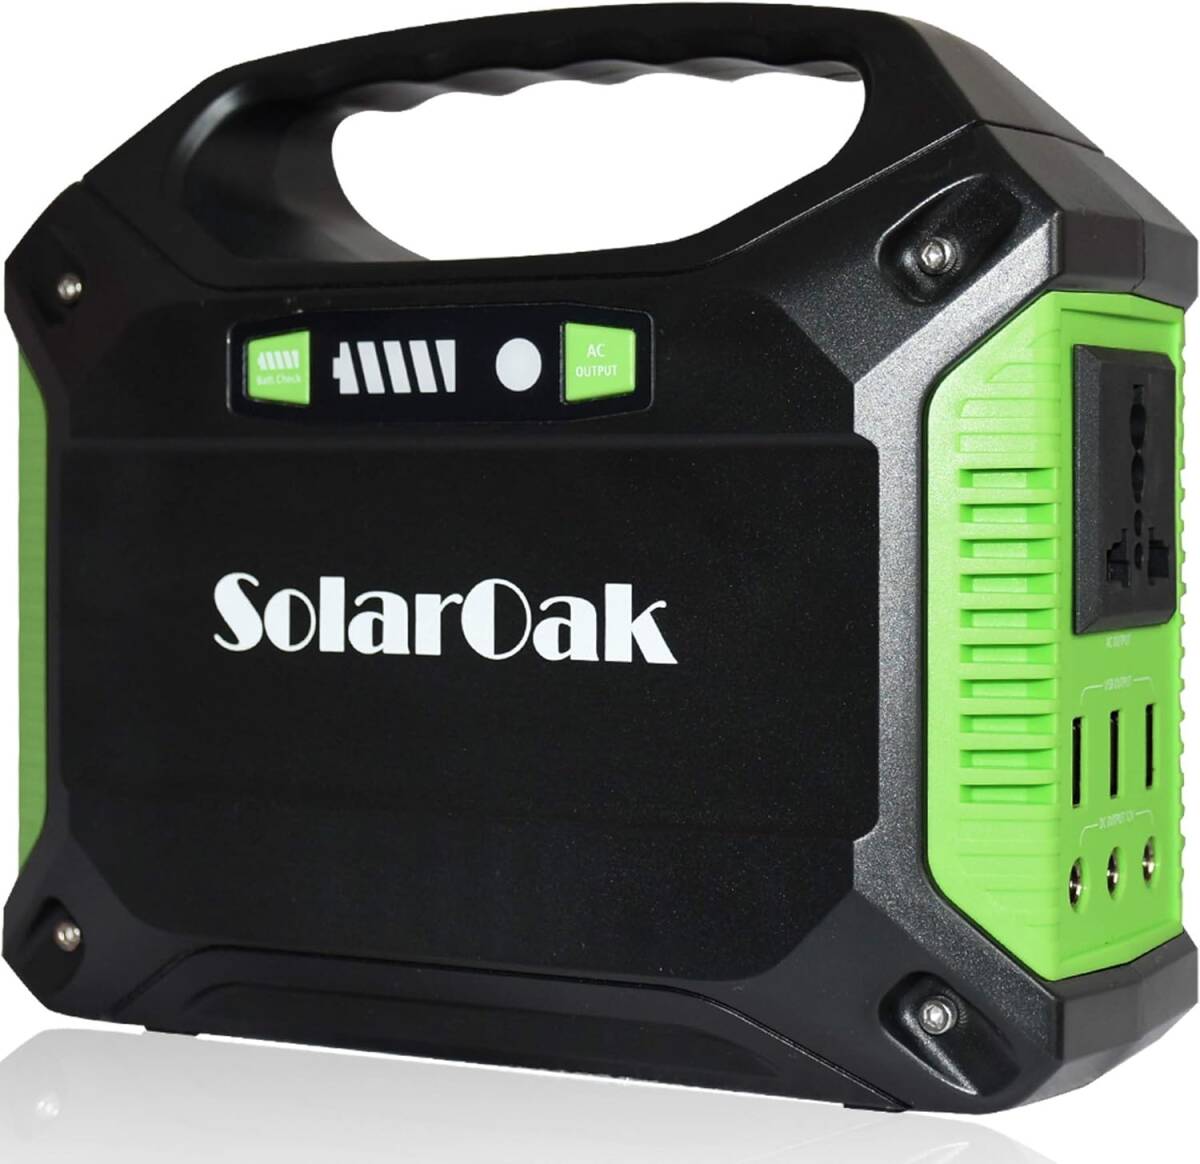 ポータブル電源 SolarOak PSE認証済 42000mAh/155Wh AC/DC/USB出力 アウトドア キャンプ 停電 防災グッズ 非常用電源の画像1